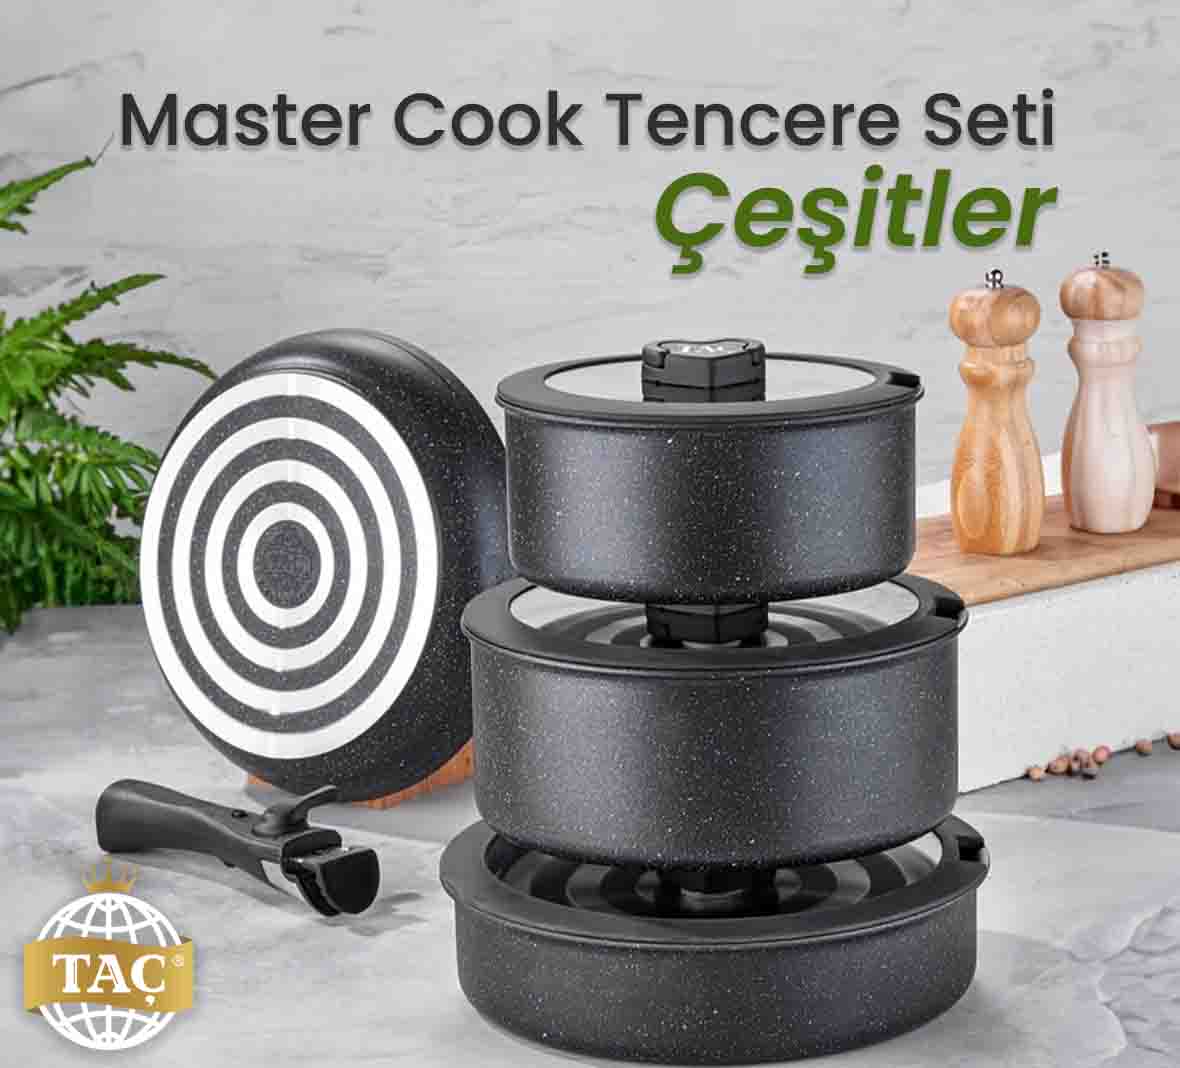 Master Cook 4'lü Granit Tencere Seti Çeşitleri iççin iletişime geçin. - tacev.com | Taç Blog